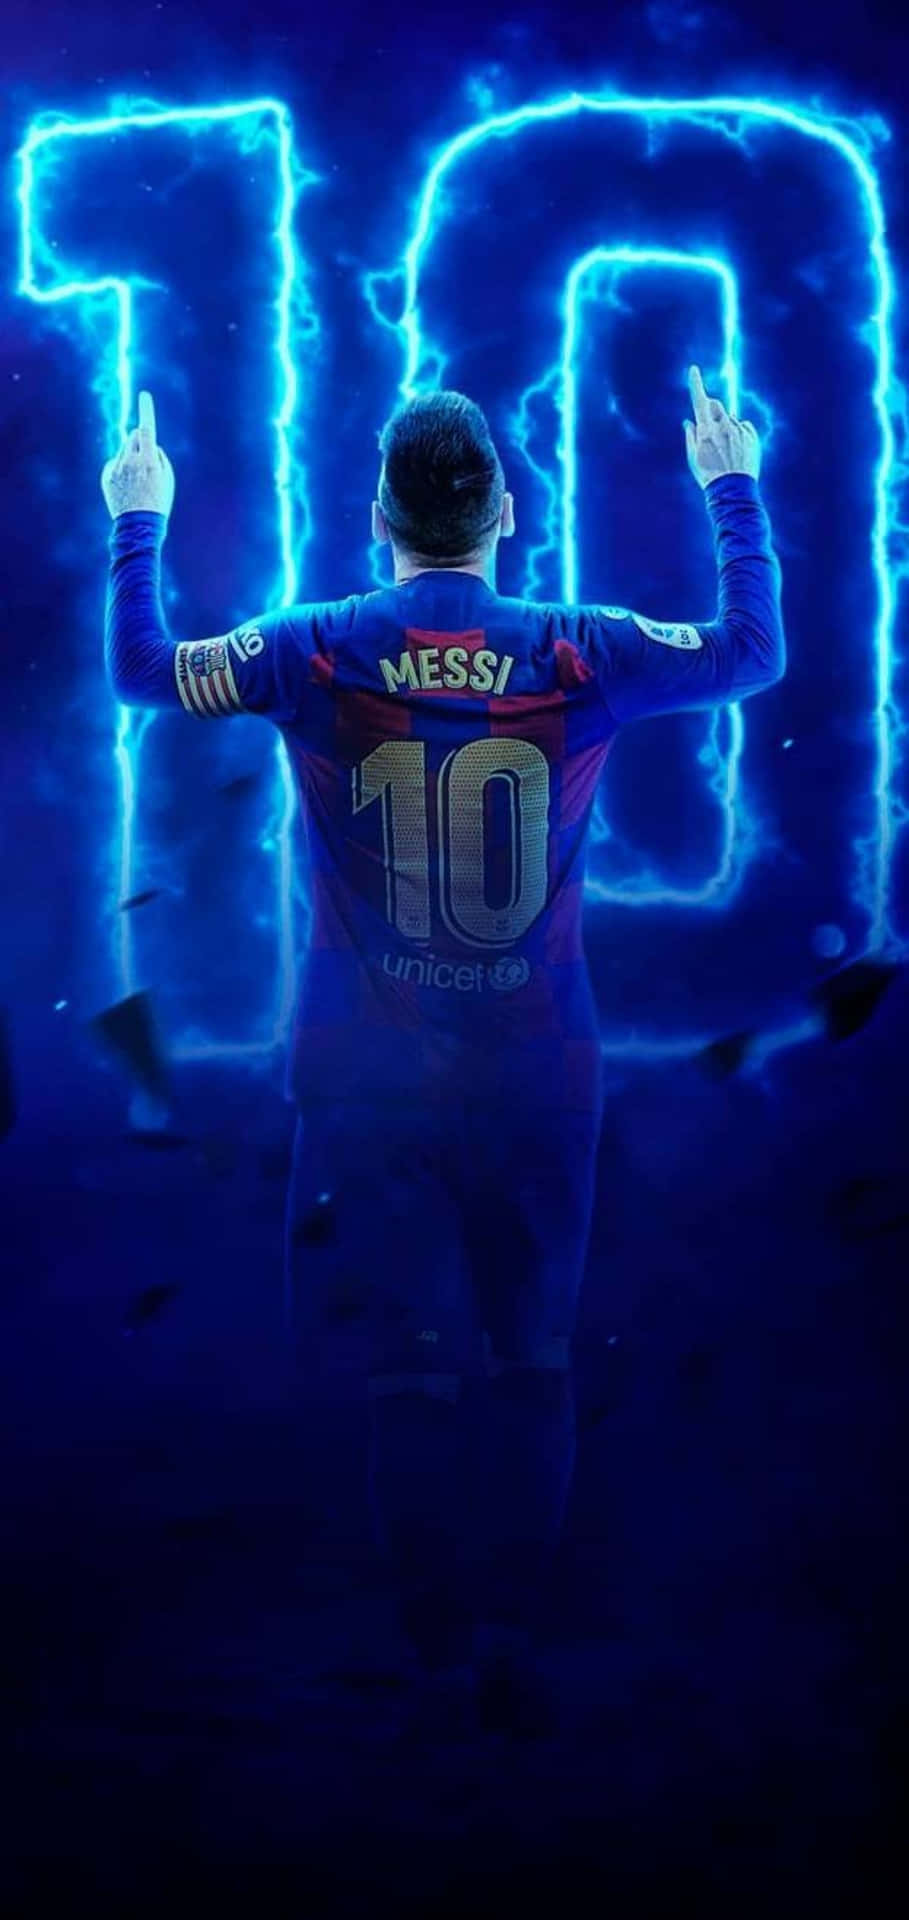 Hãy tải về ngay để sở hữu hình ảnh độc đáo và đẳng cấp của Messi. Bạn sẽ không thể rời mắt khỏi nó đâu!